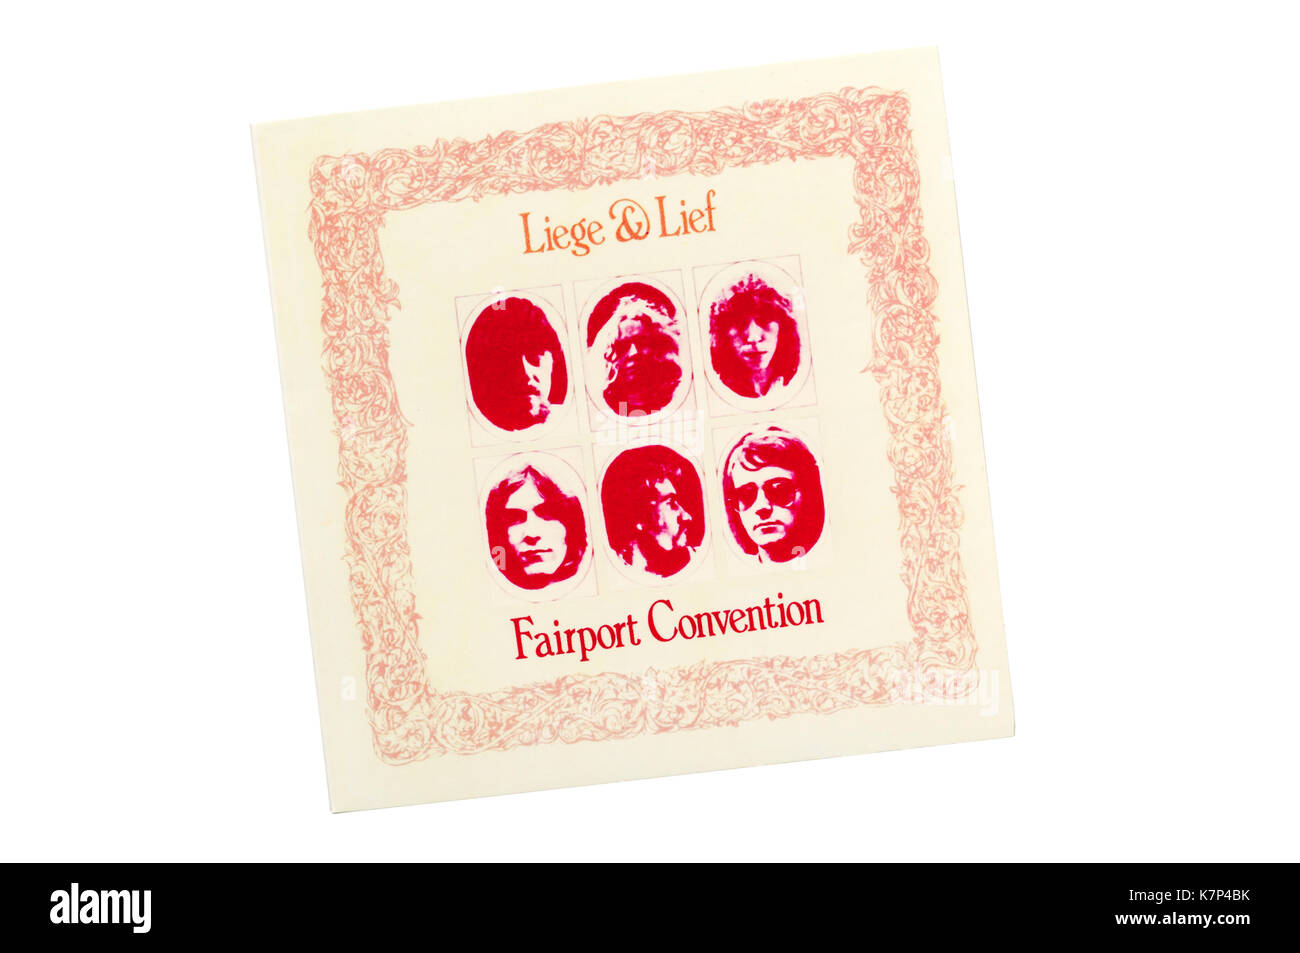 Liege & Lief était le quatrième album du groupe de rock folk anglais Fairport Convention. Sorti au Royaume-Uni en 1969. Banque D'Images